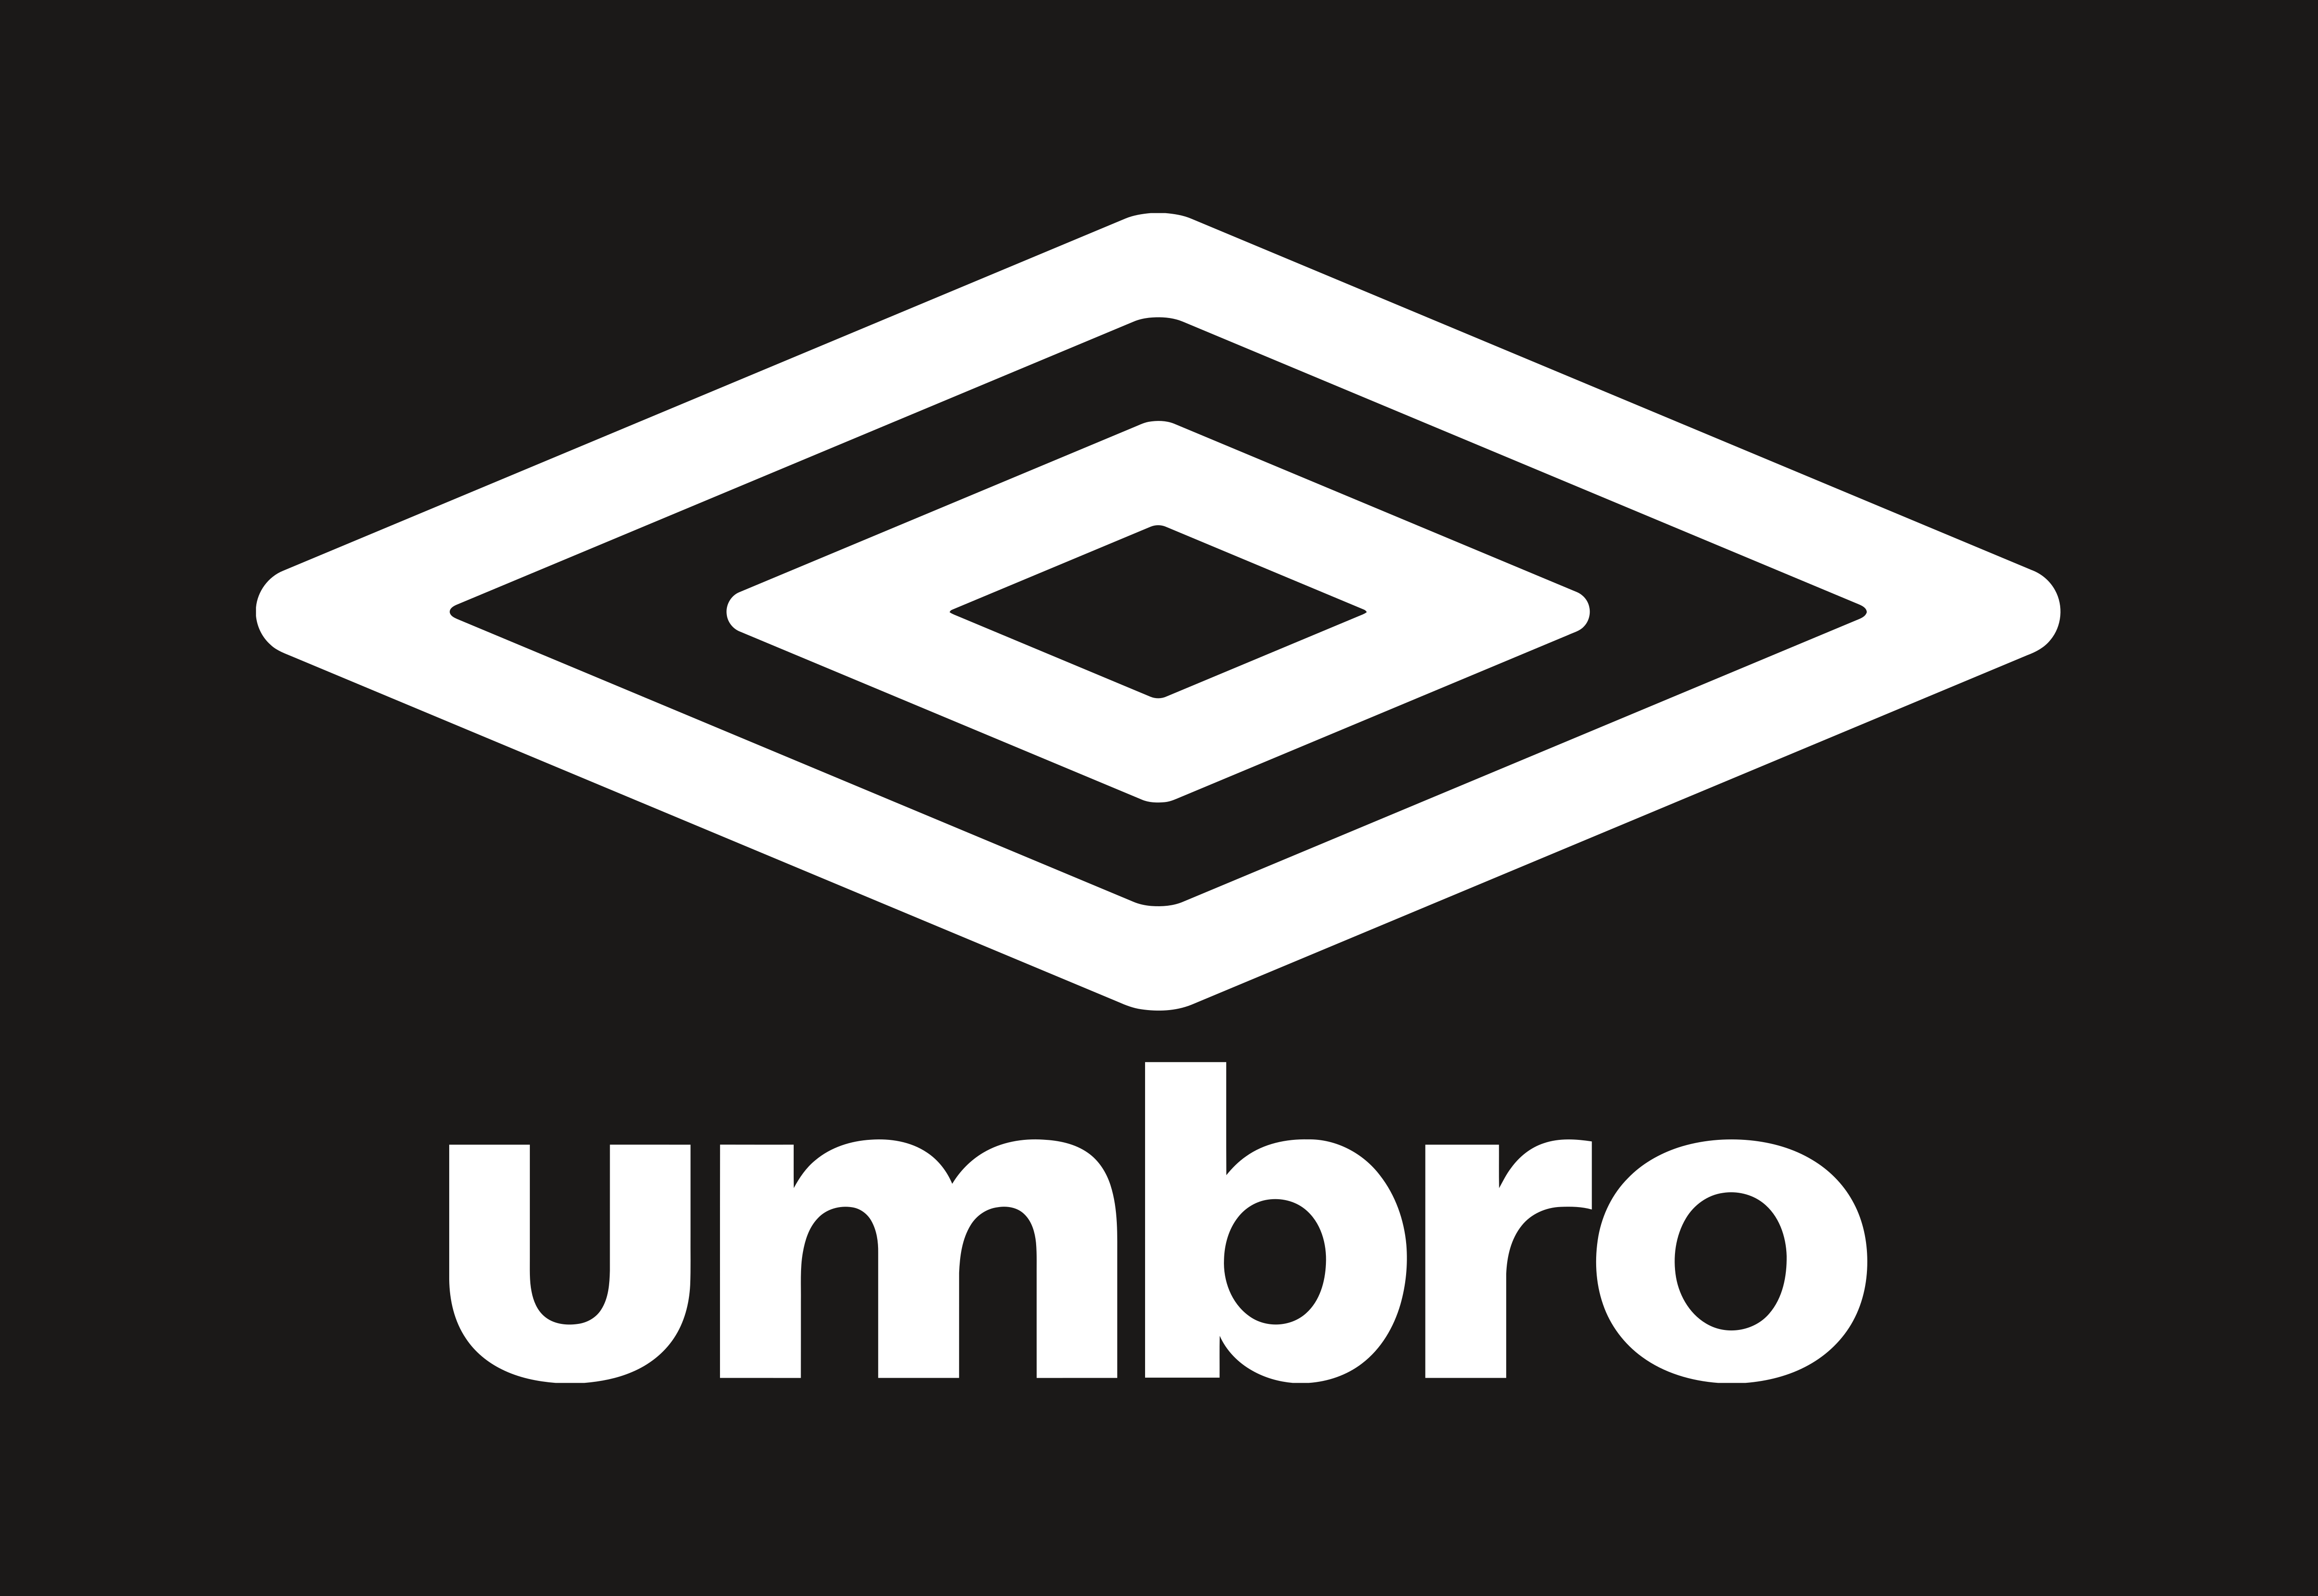 umbro-logos-download